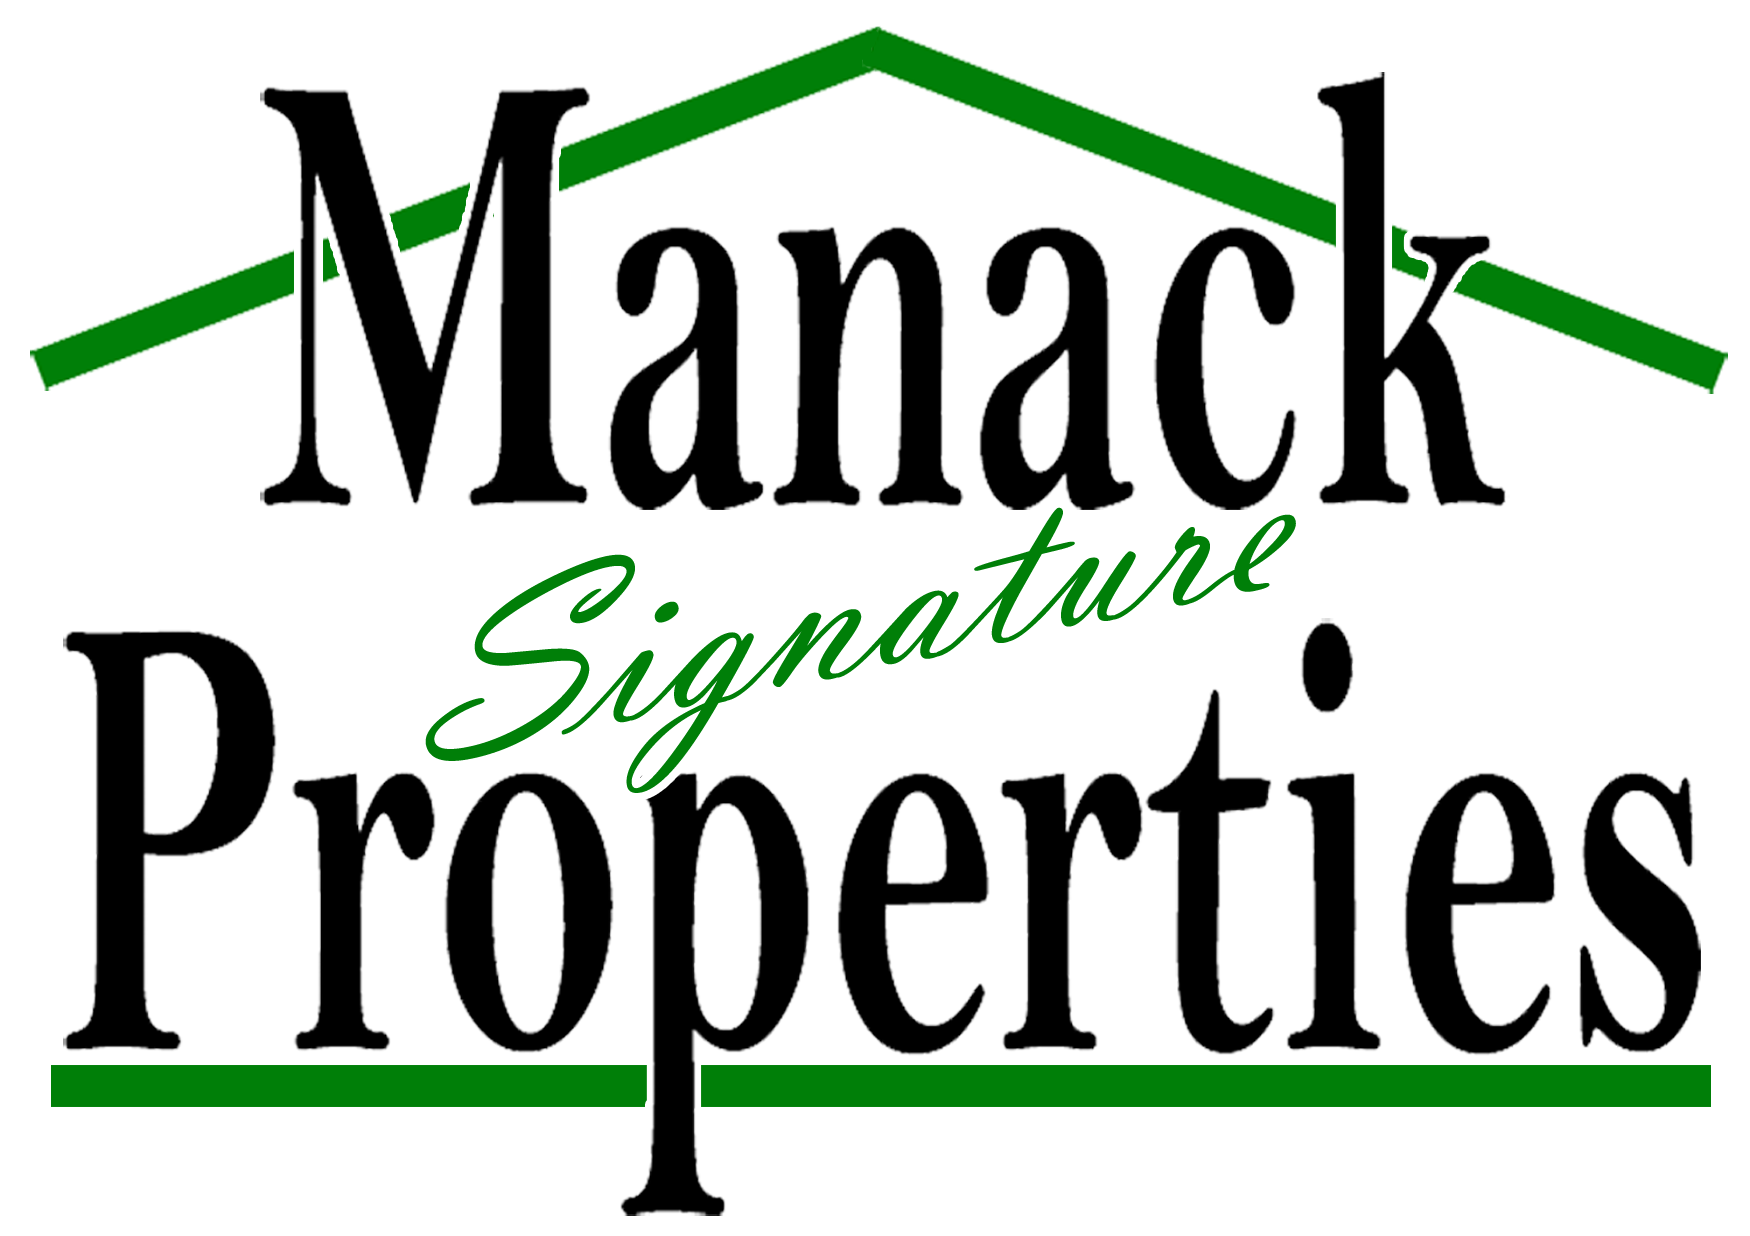 Manack Signature Properties